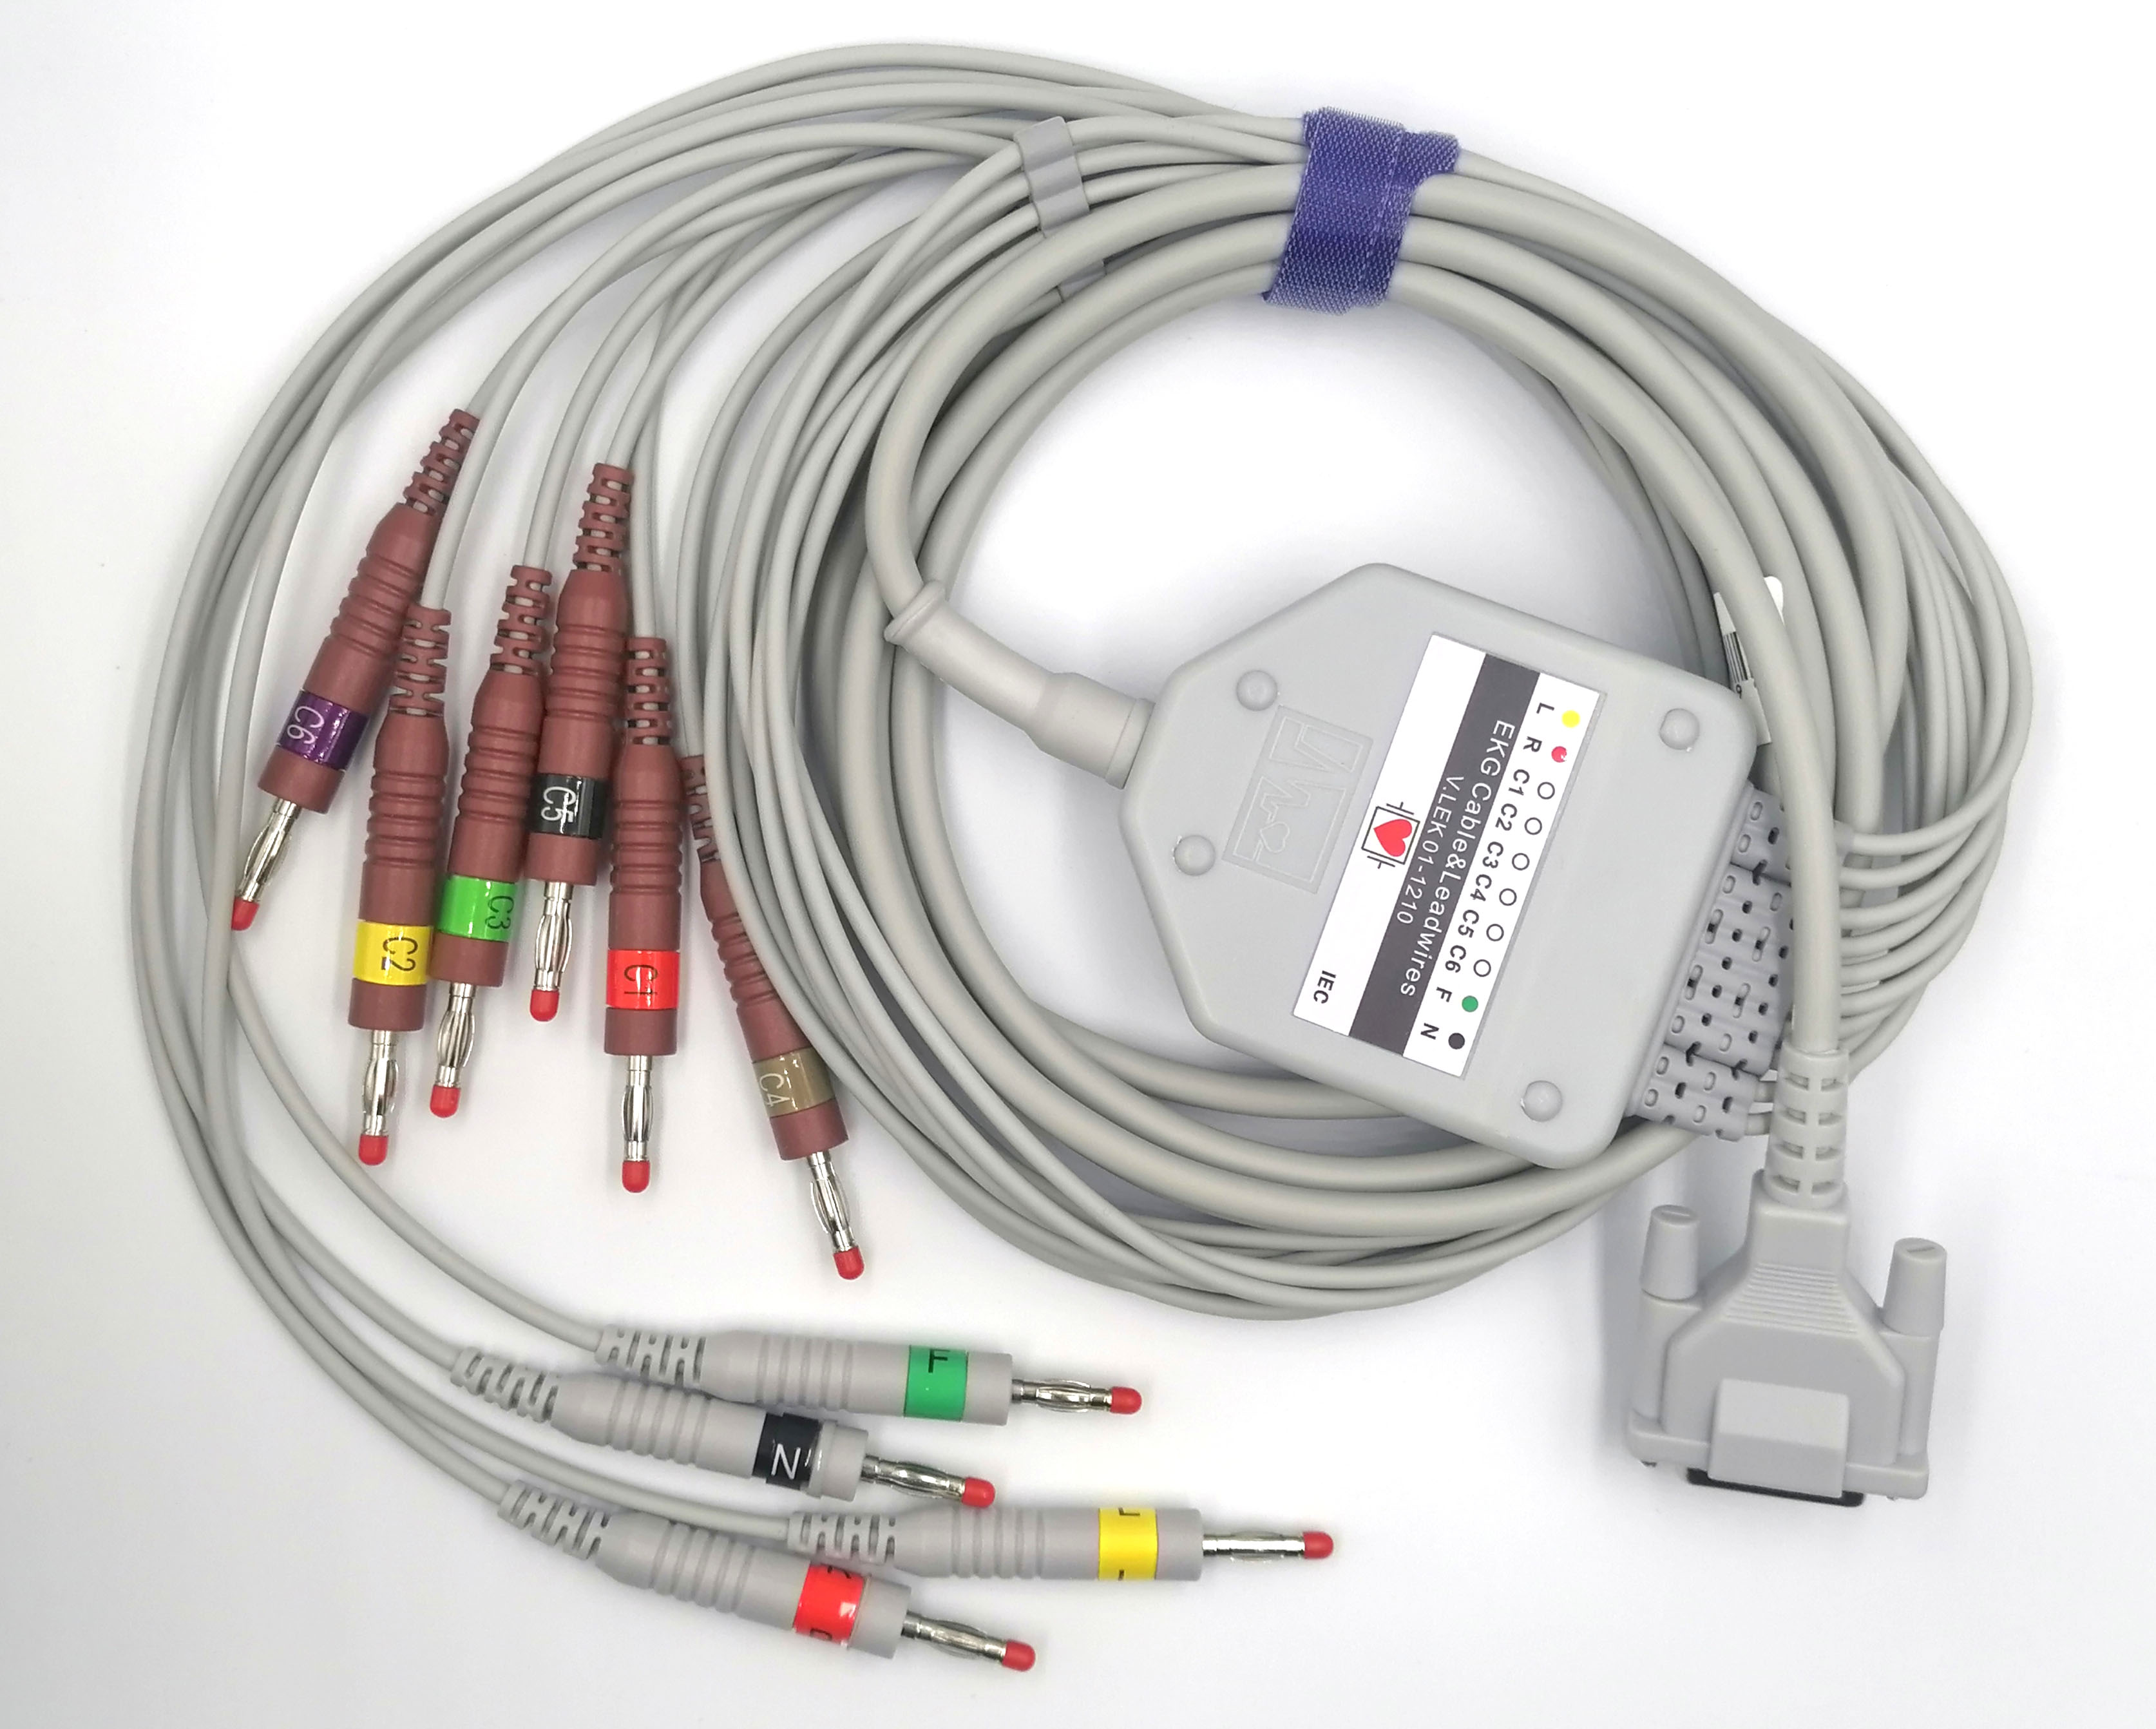 ЭКГ кабель пациента для электрокардиографов Nihon Kohden (все модели, кроме ECG-9320, ECG-9522P, ECG-1550, 1550K), с разборной коробкой, штекер banana 4мм, IEC